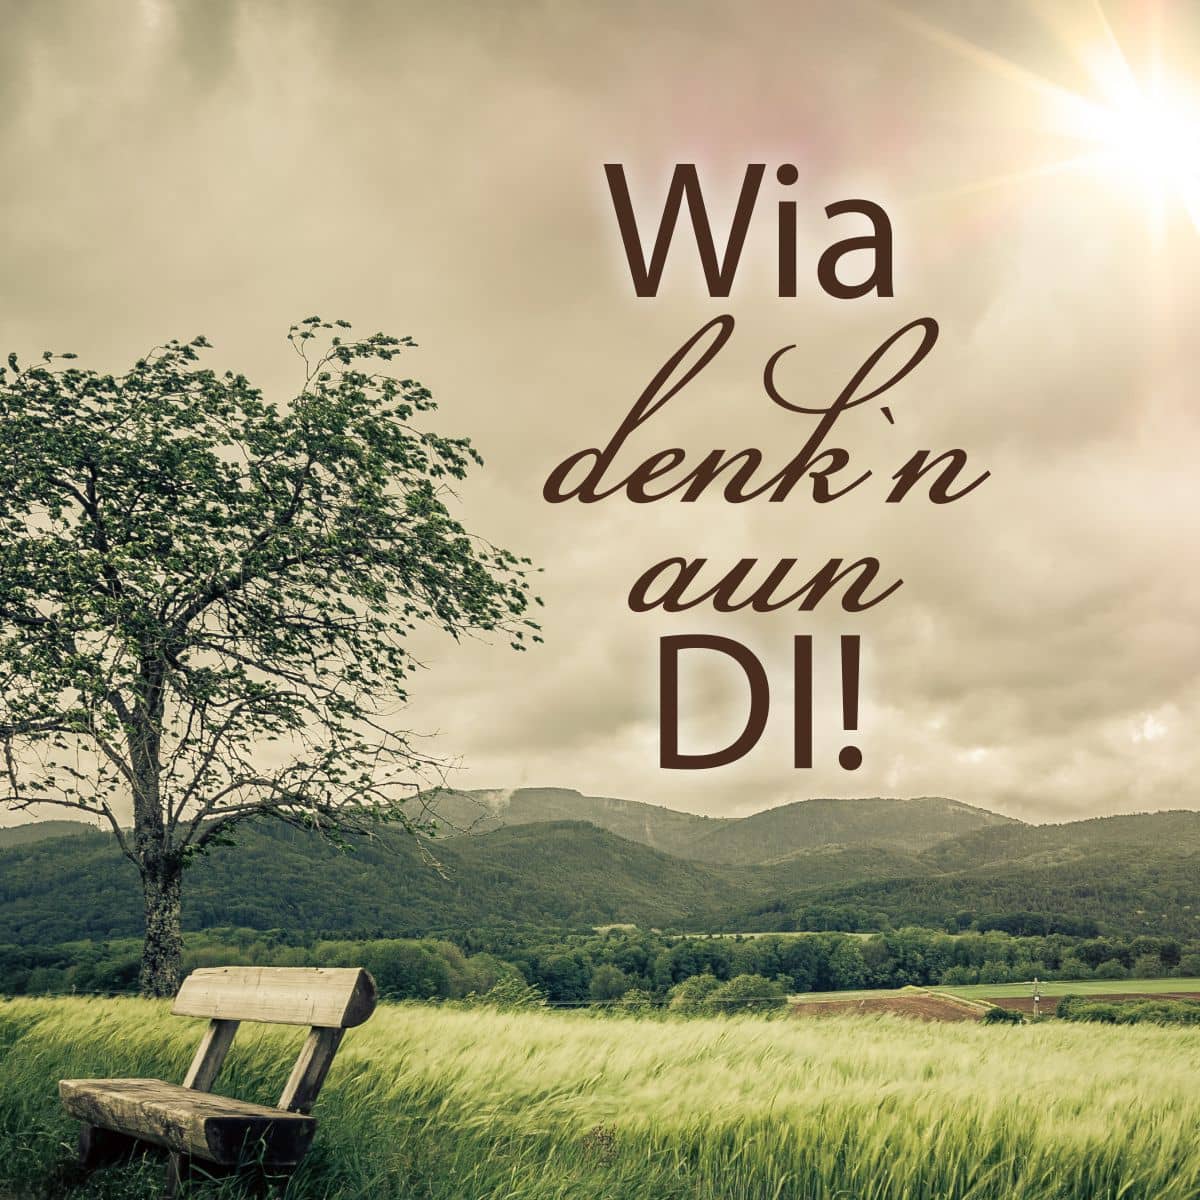 Motiv Bank und Baum auf Wiese mit Text "Wia denk`n aun di!"